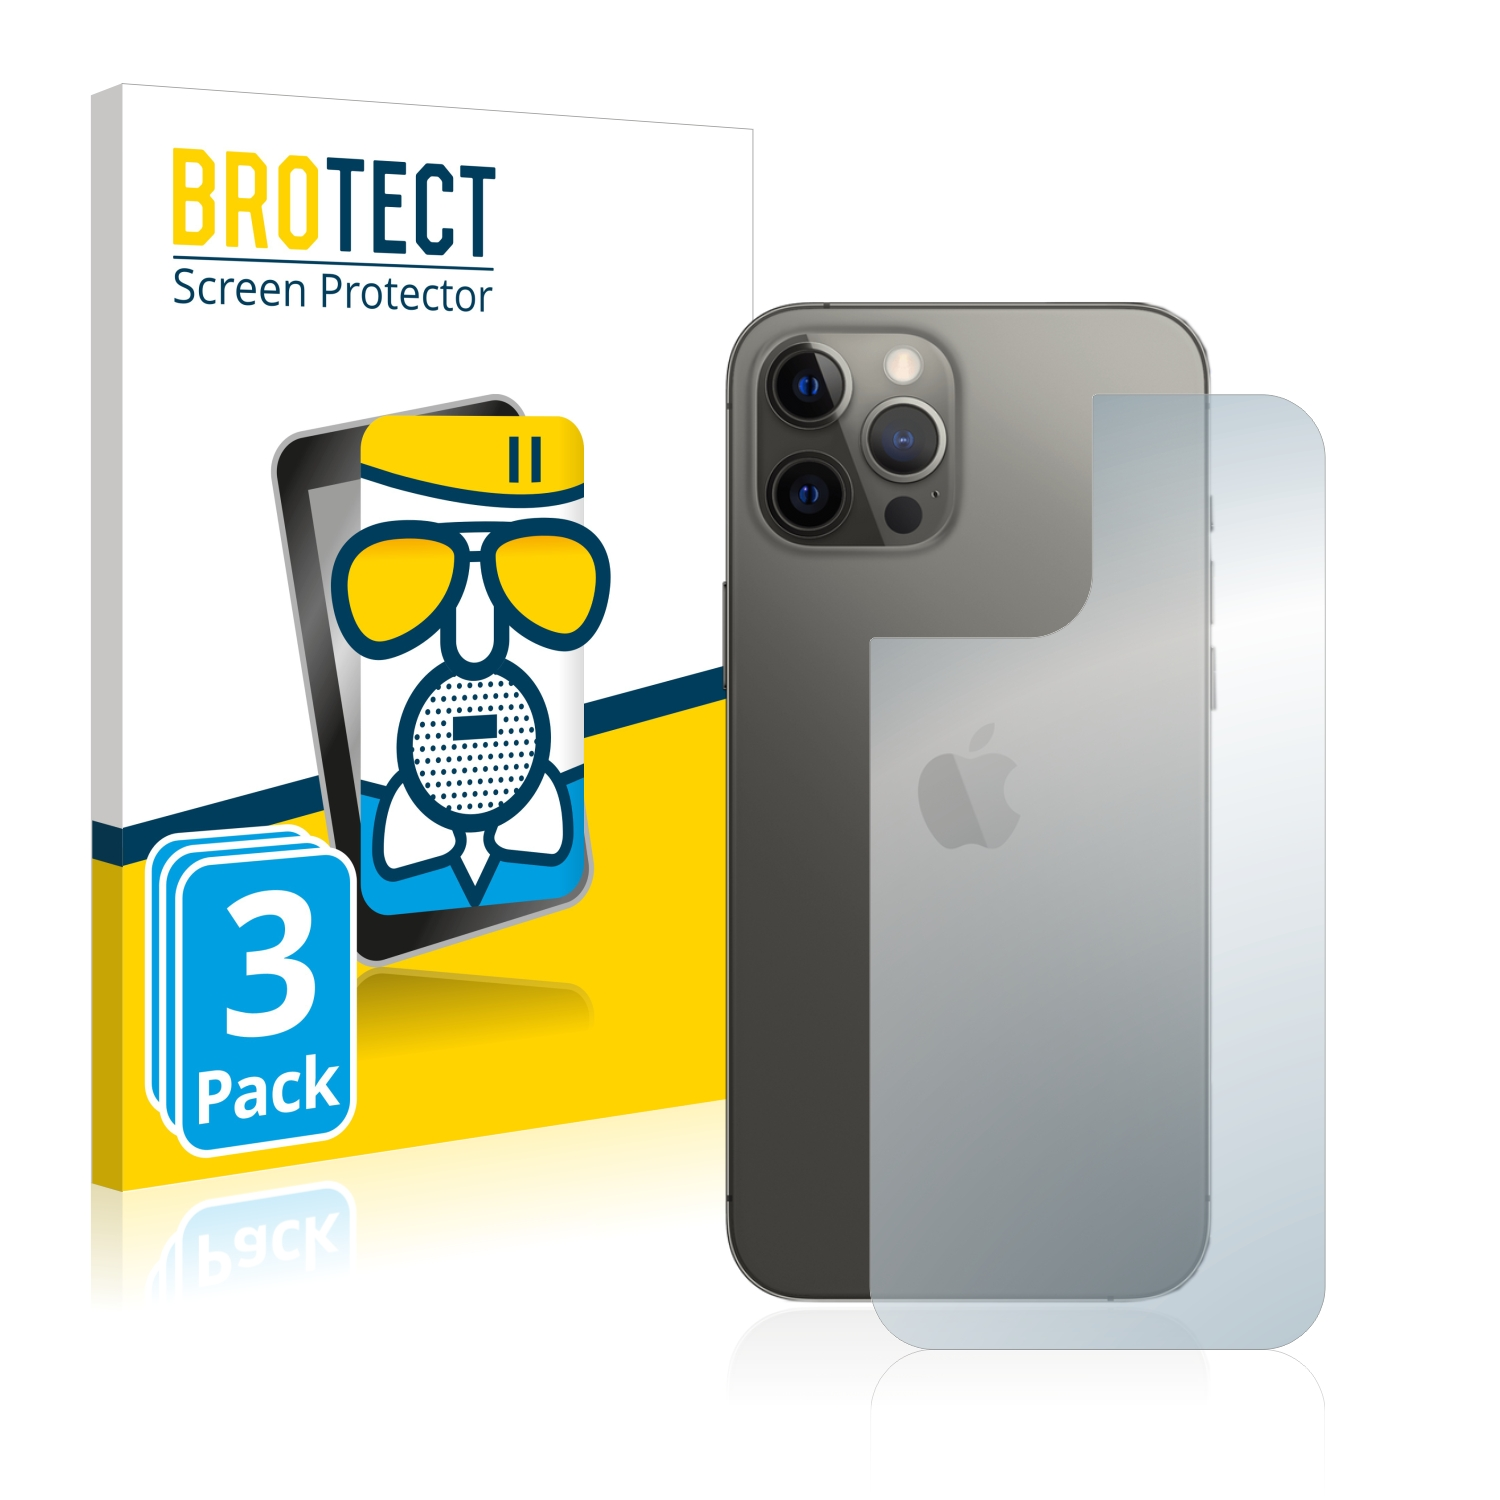 BROTECT 3x Airglass matte 12 Apple iPhone Schutzfolie(für Max) Pro